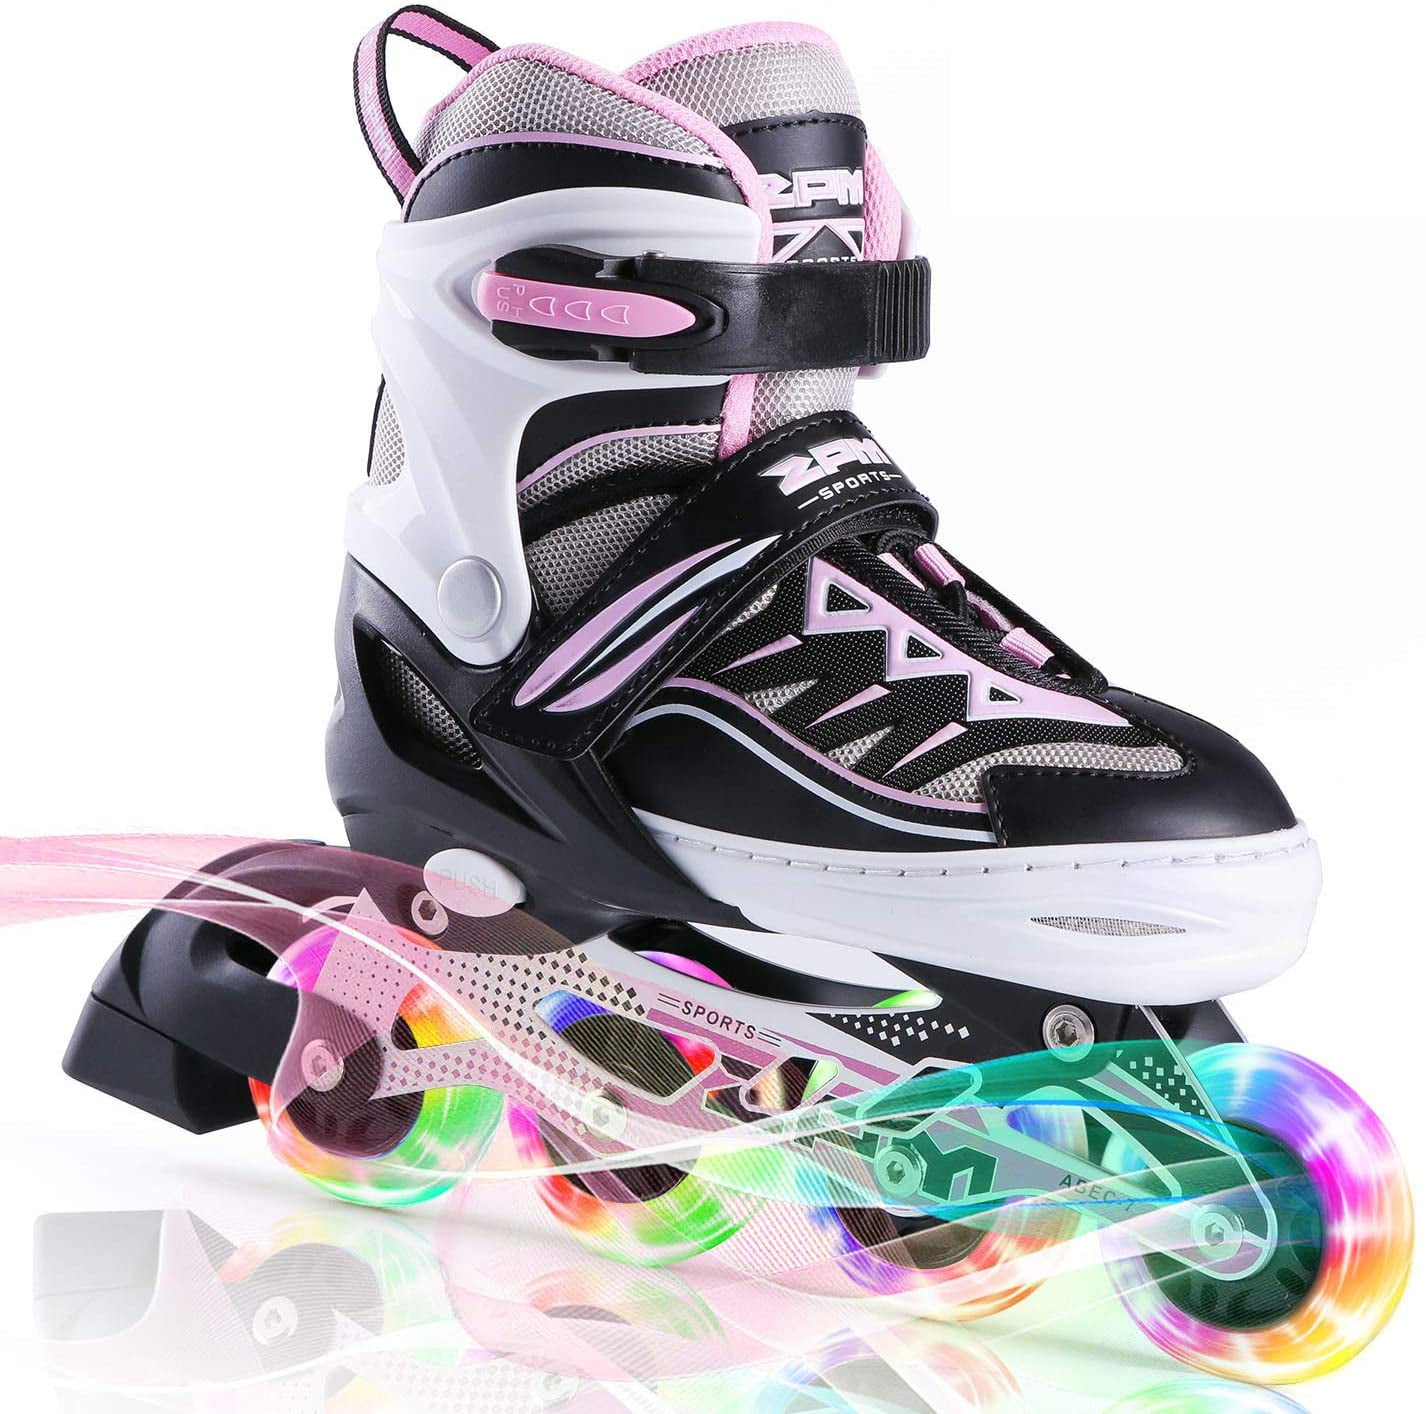 Details about  / Inline Skates Adjustable Roller Skates Blade Light Up Flashing Skates Wheels|